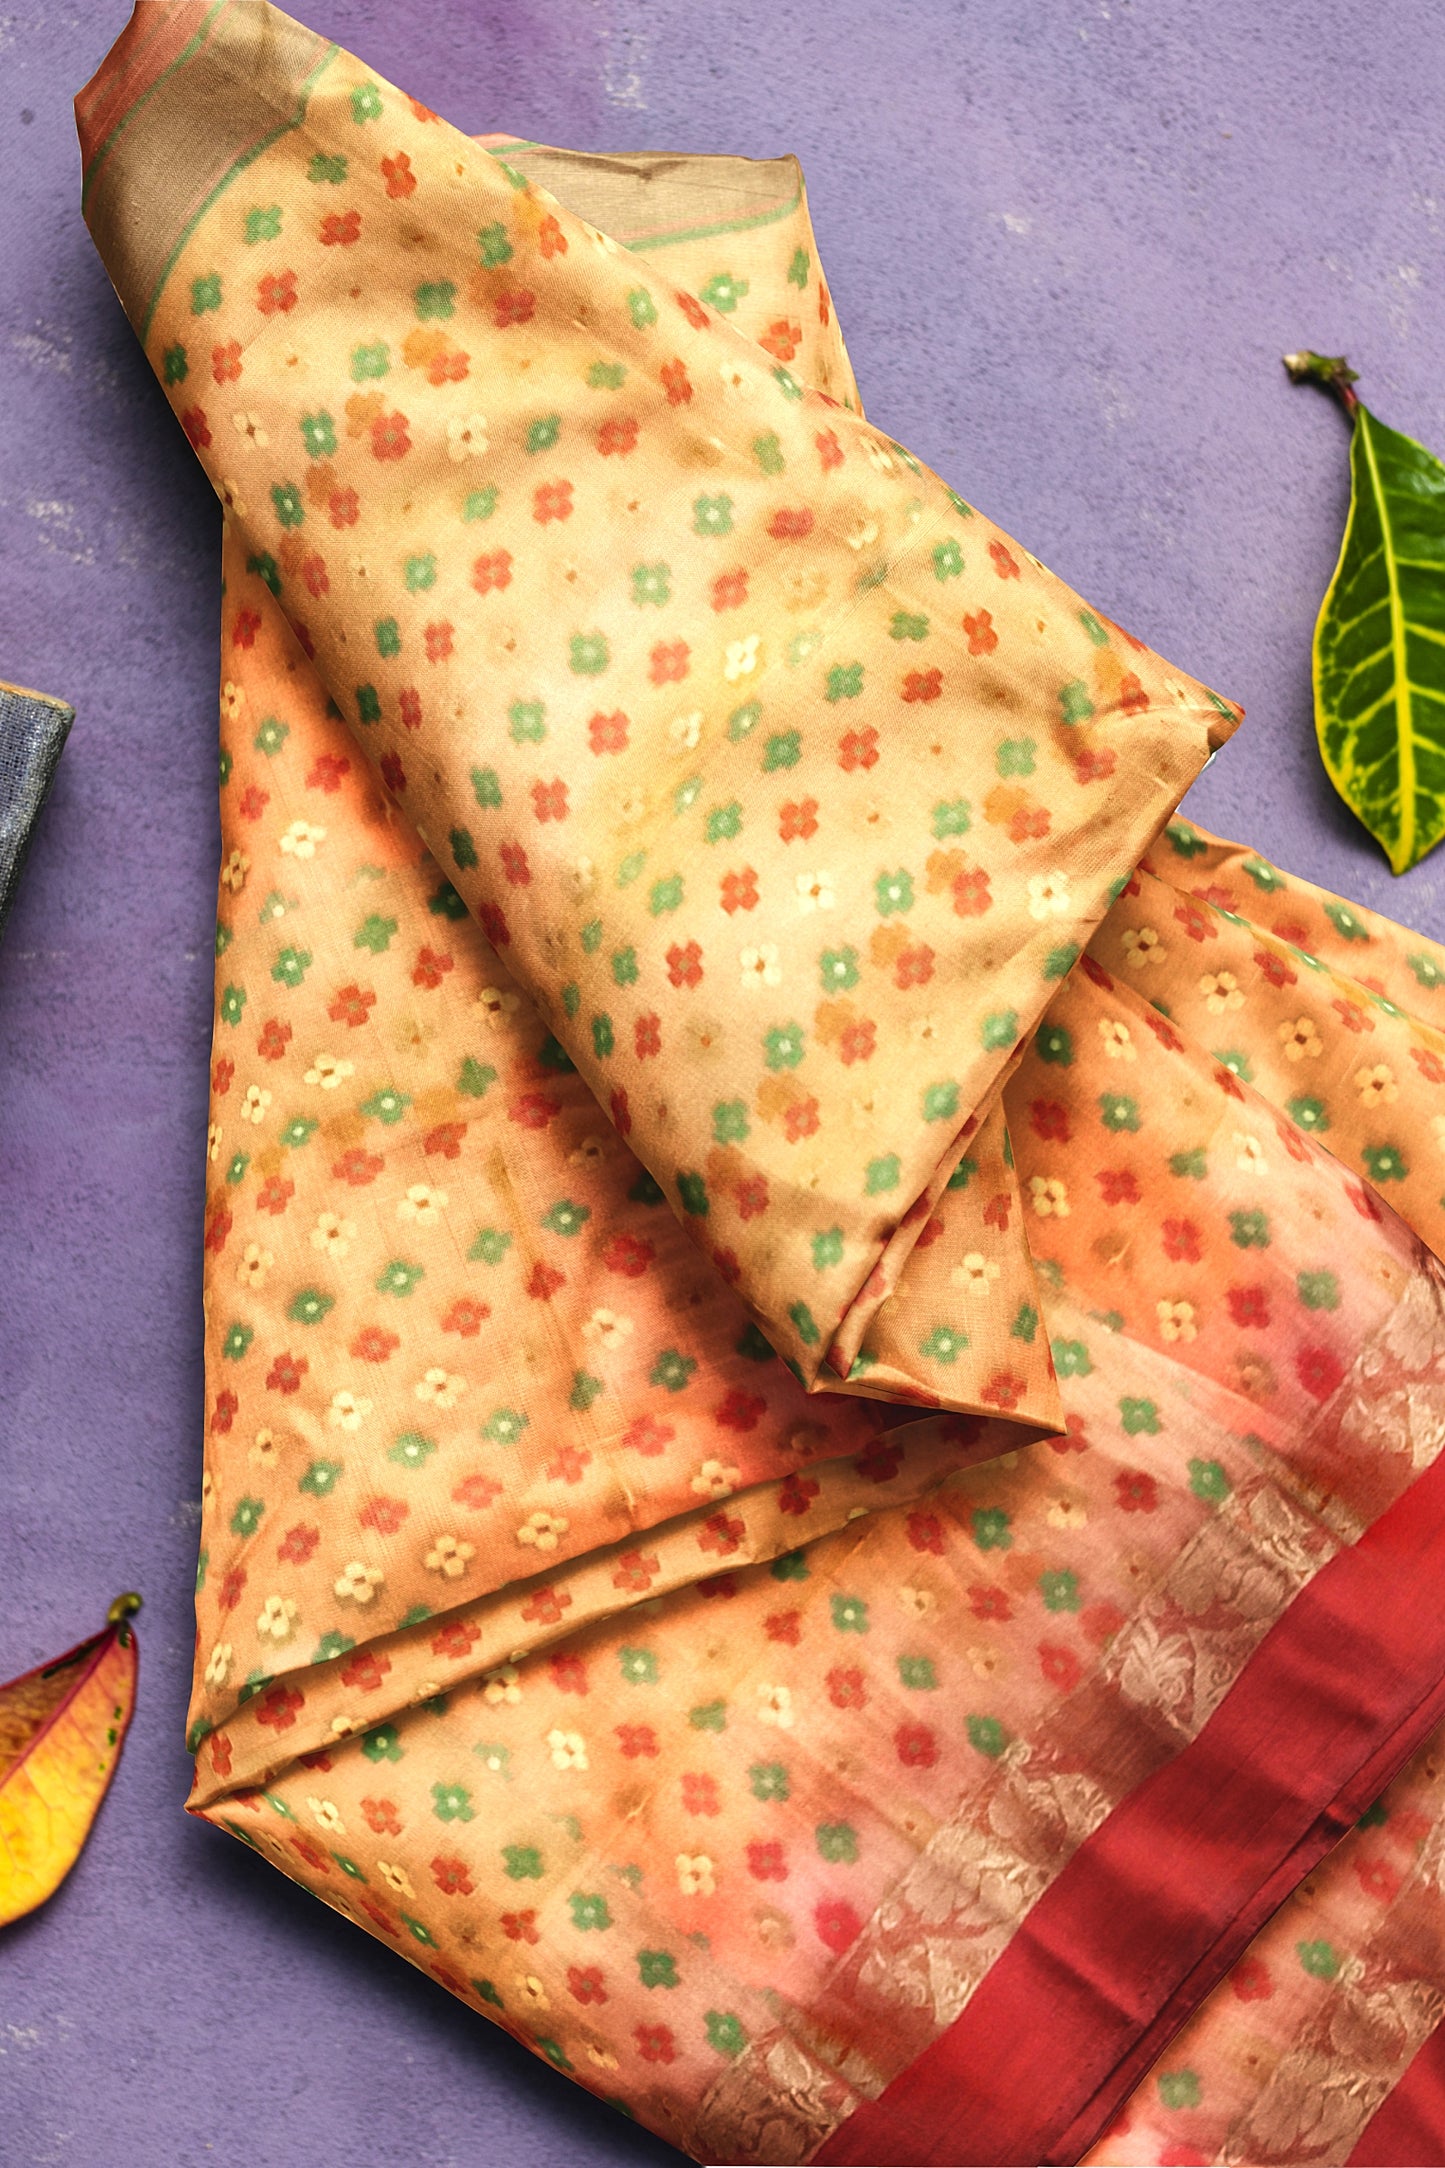 Pradip Fabrics Woven Tant All Over Dhakai Jamdani Yellow and Red Color Saree